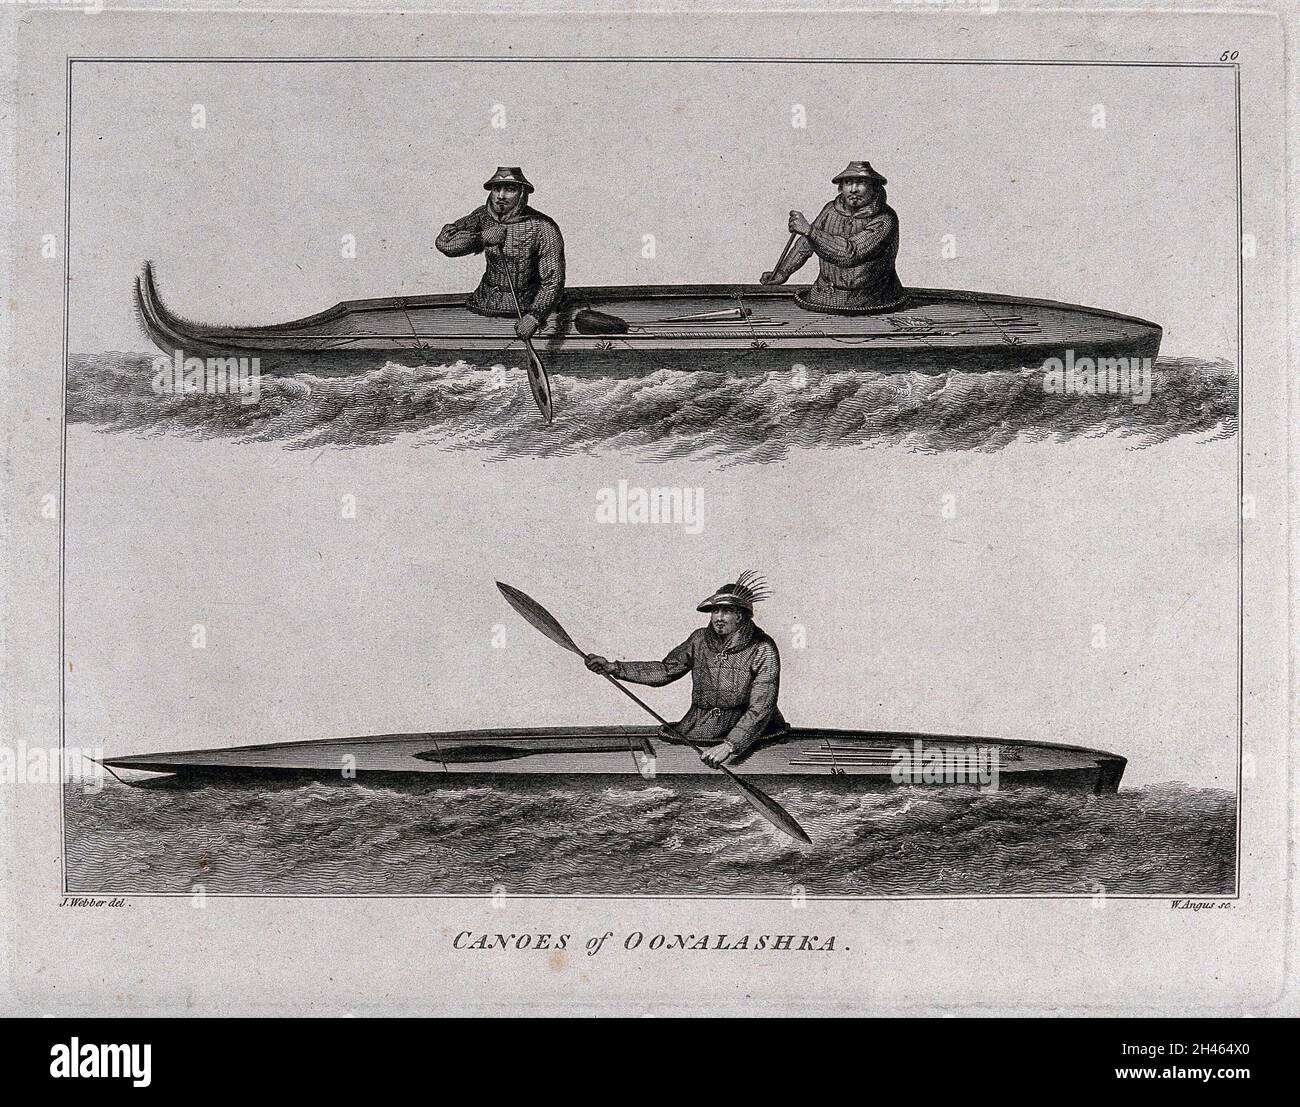 Uomini di Oonalashka (Canada) in canoe; incontrato dal capitano Cook nel suo terzo viaggio (1777-1780) incisione di W. Angus dopo J. Webber, 1780/1785. Foto Stock